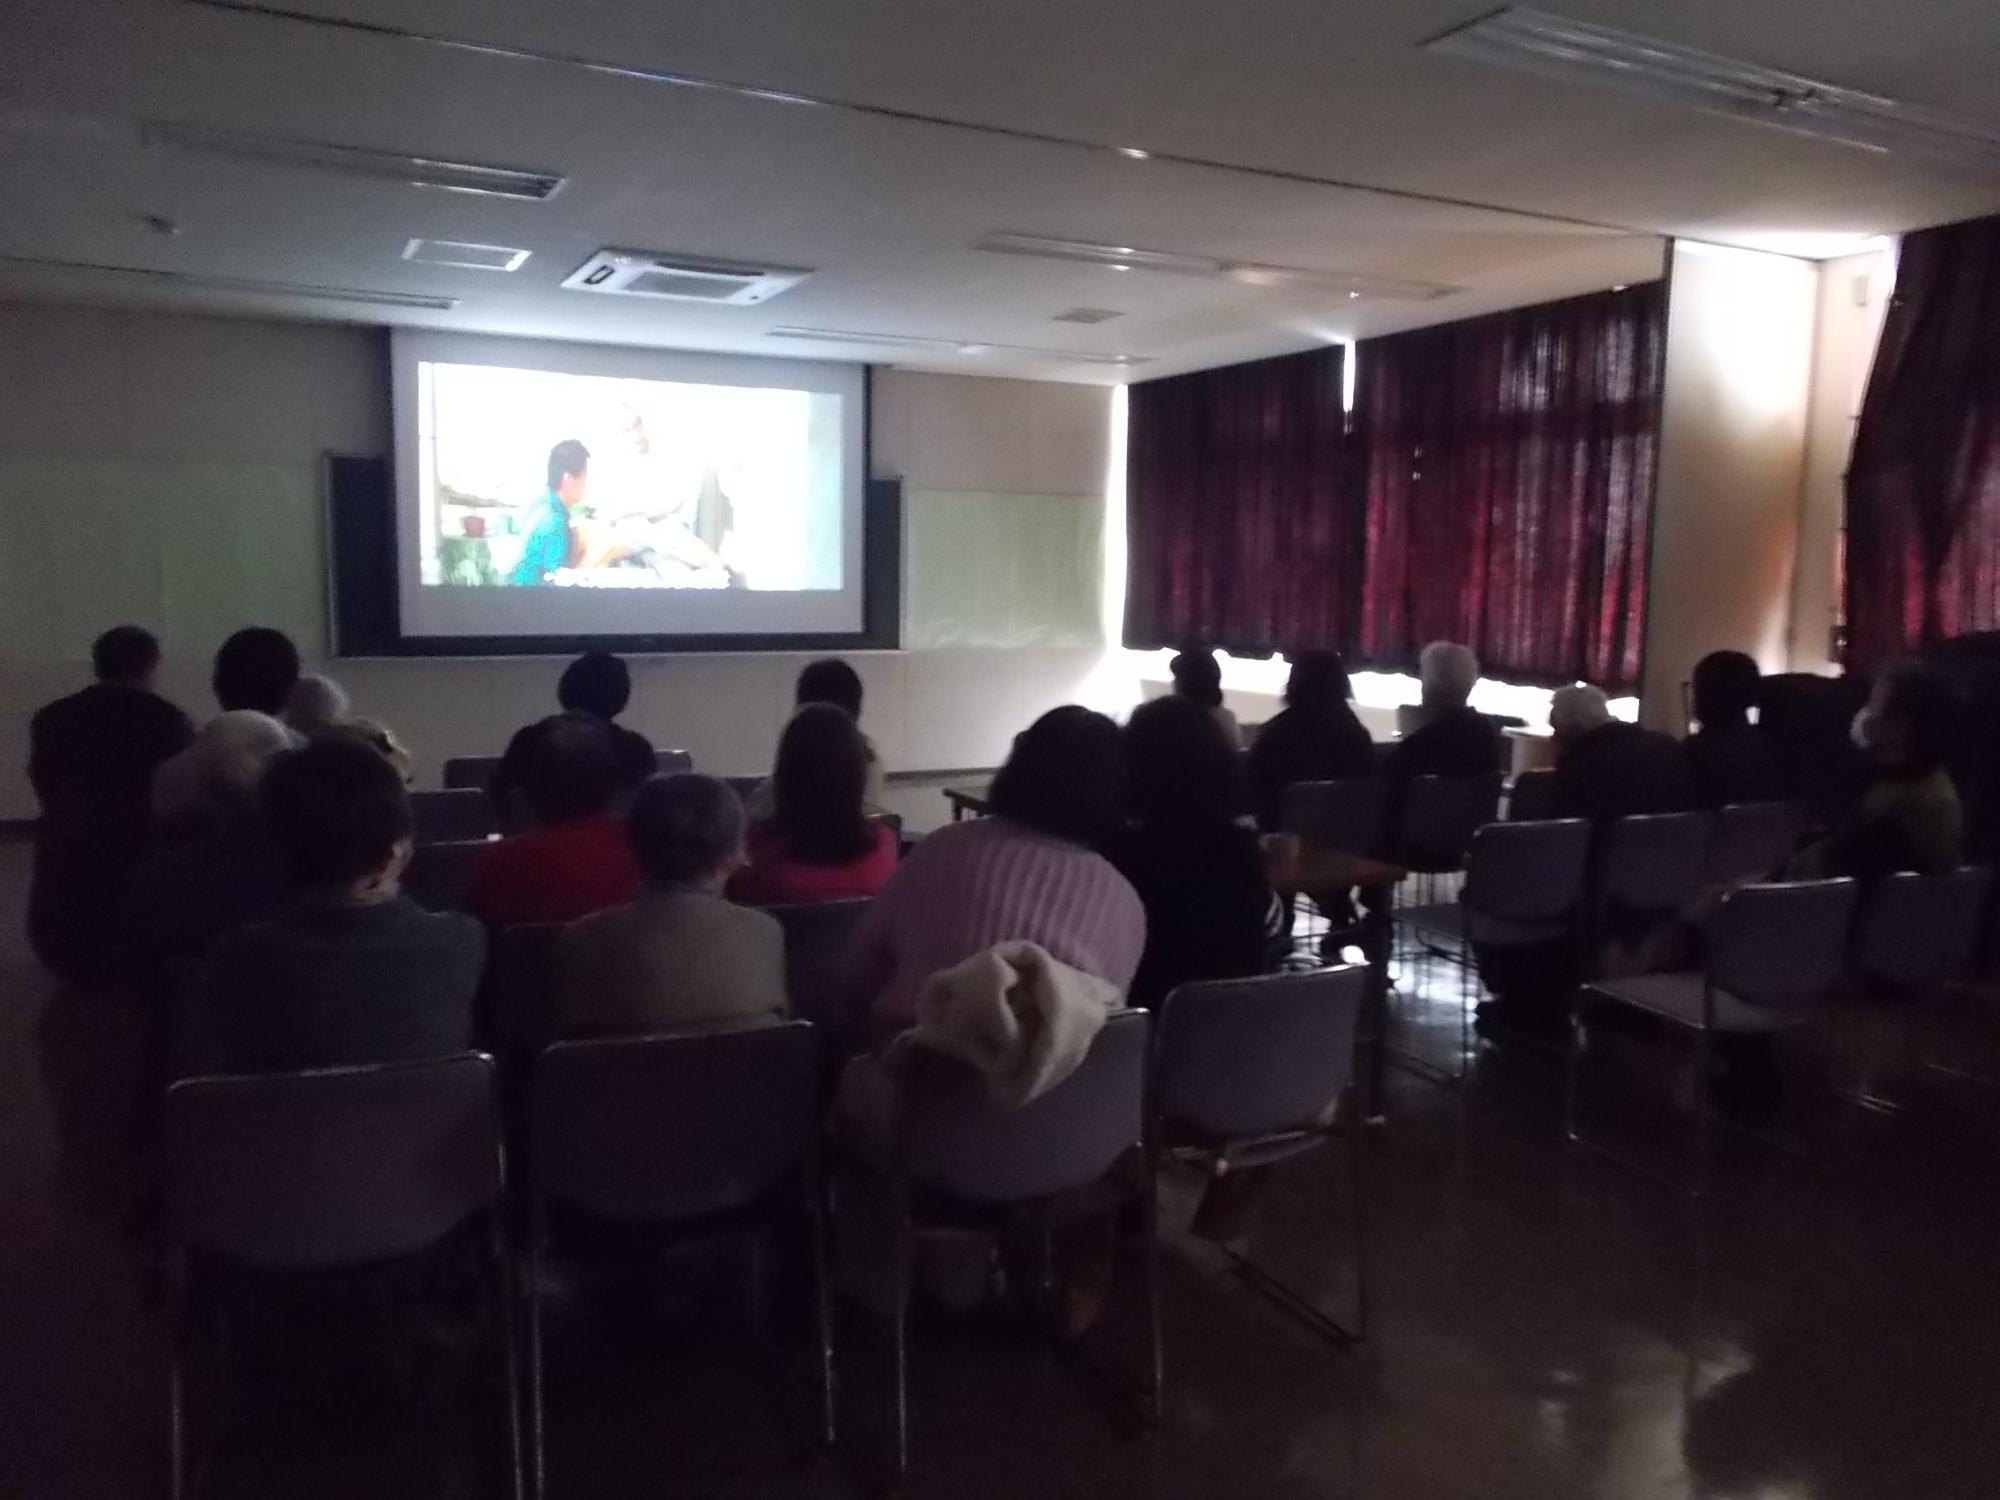 暗い部屋の中央、大きなスクリーンに映し出された映画「海角七号君想う国境の南」を観る人たち